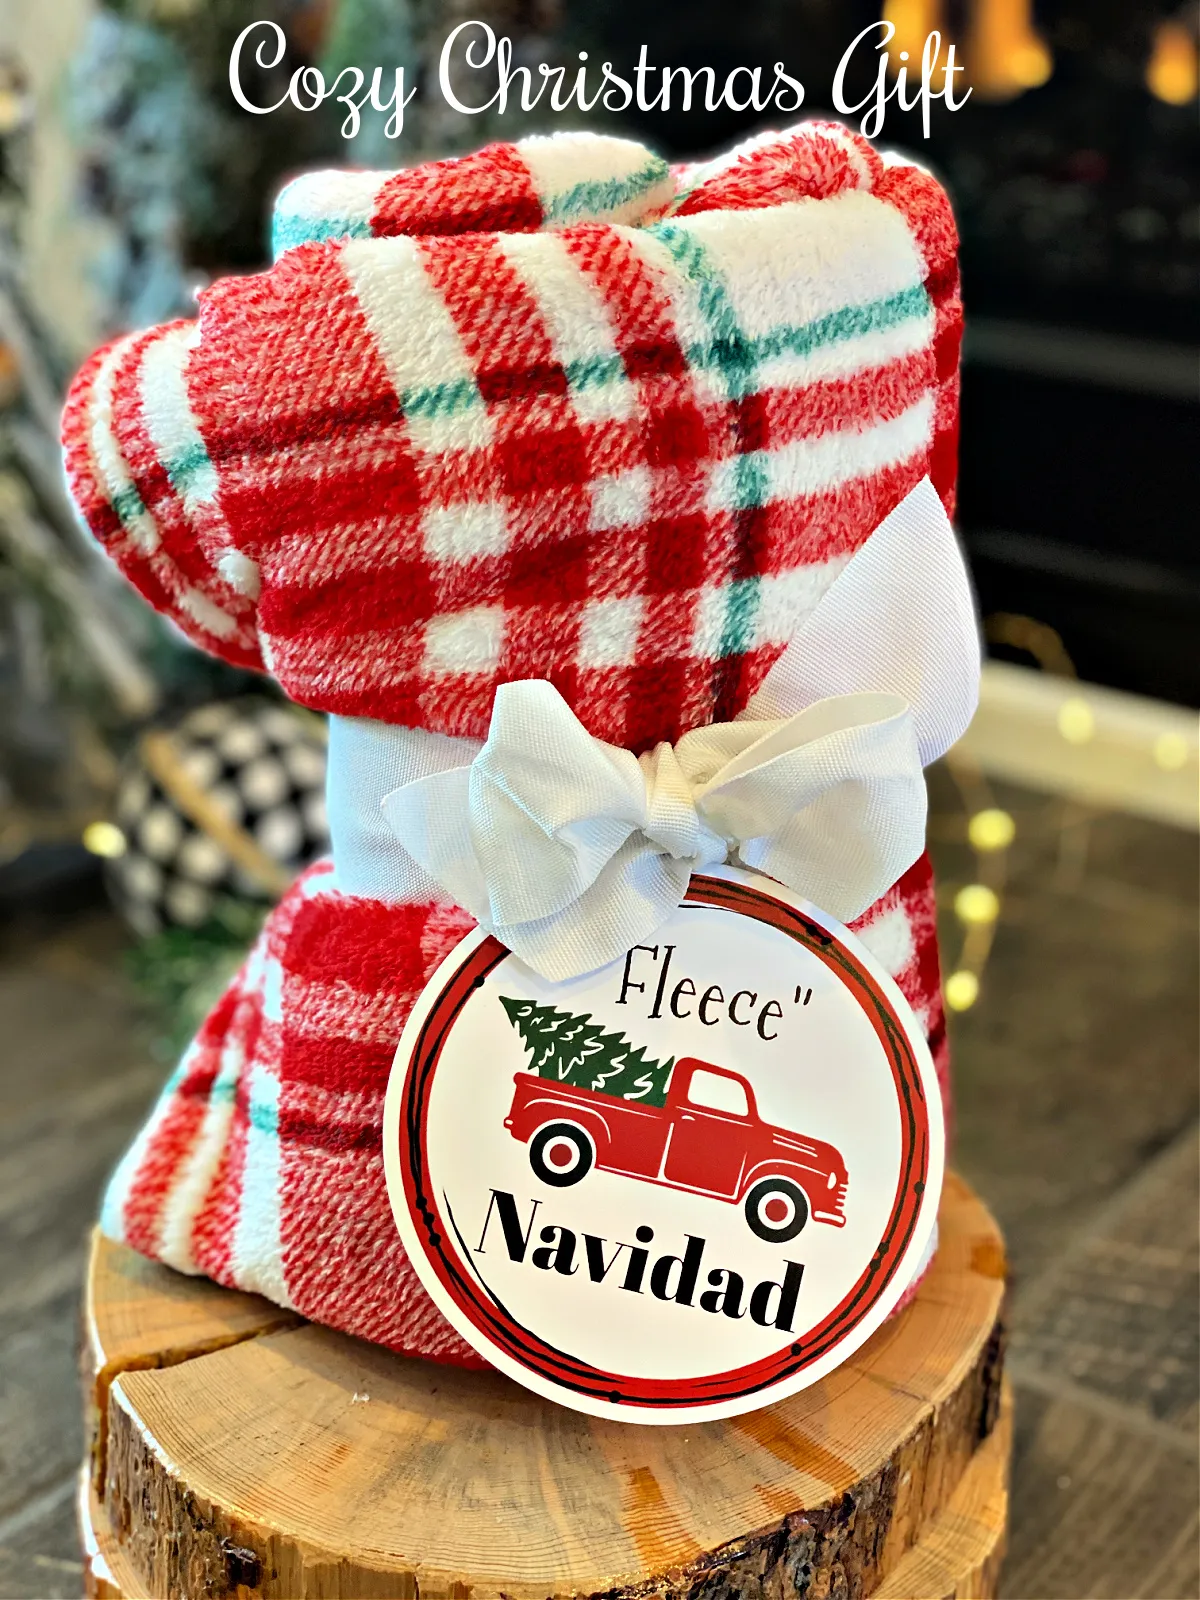 "Fleece" Navidad Gift Idea: